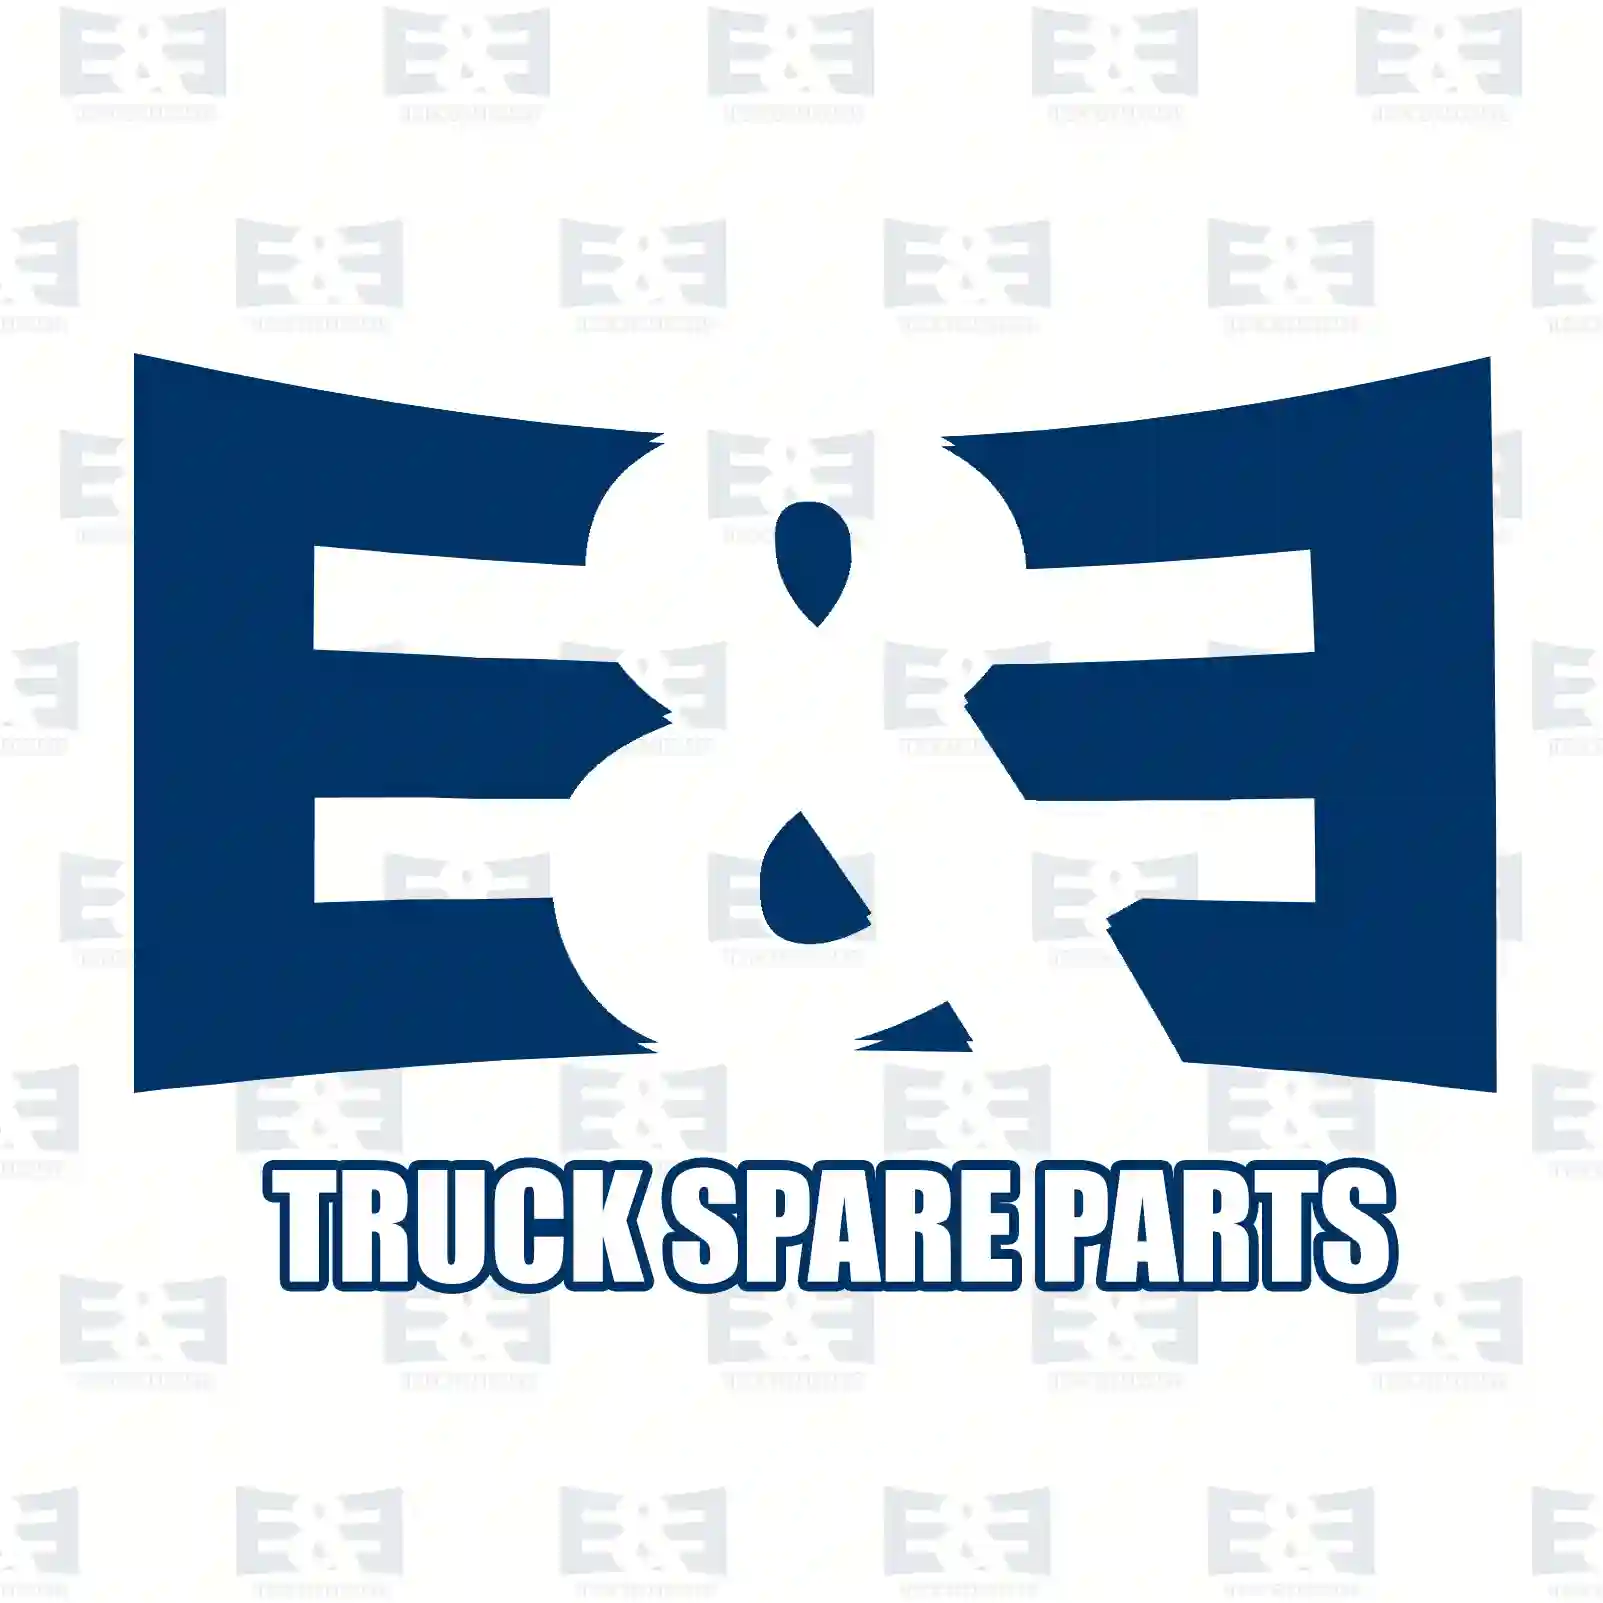 Oil seal, 2E2278000, 1311157, 4C1R-7048-AA, 0099975347 ||  2E2278000 E&E Truck Spare Parts | Truck Spare Parts, Auotomotive Spare Parts Oil seal, 2E2278000, 1311157, 4C1R-7048-AA, 0099975347 ||  2E2278000 E&E Truck Spare Parts | Truck Spare Parts, Auotomotive Spare Parts